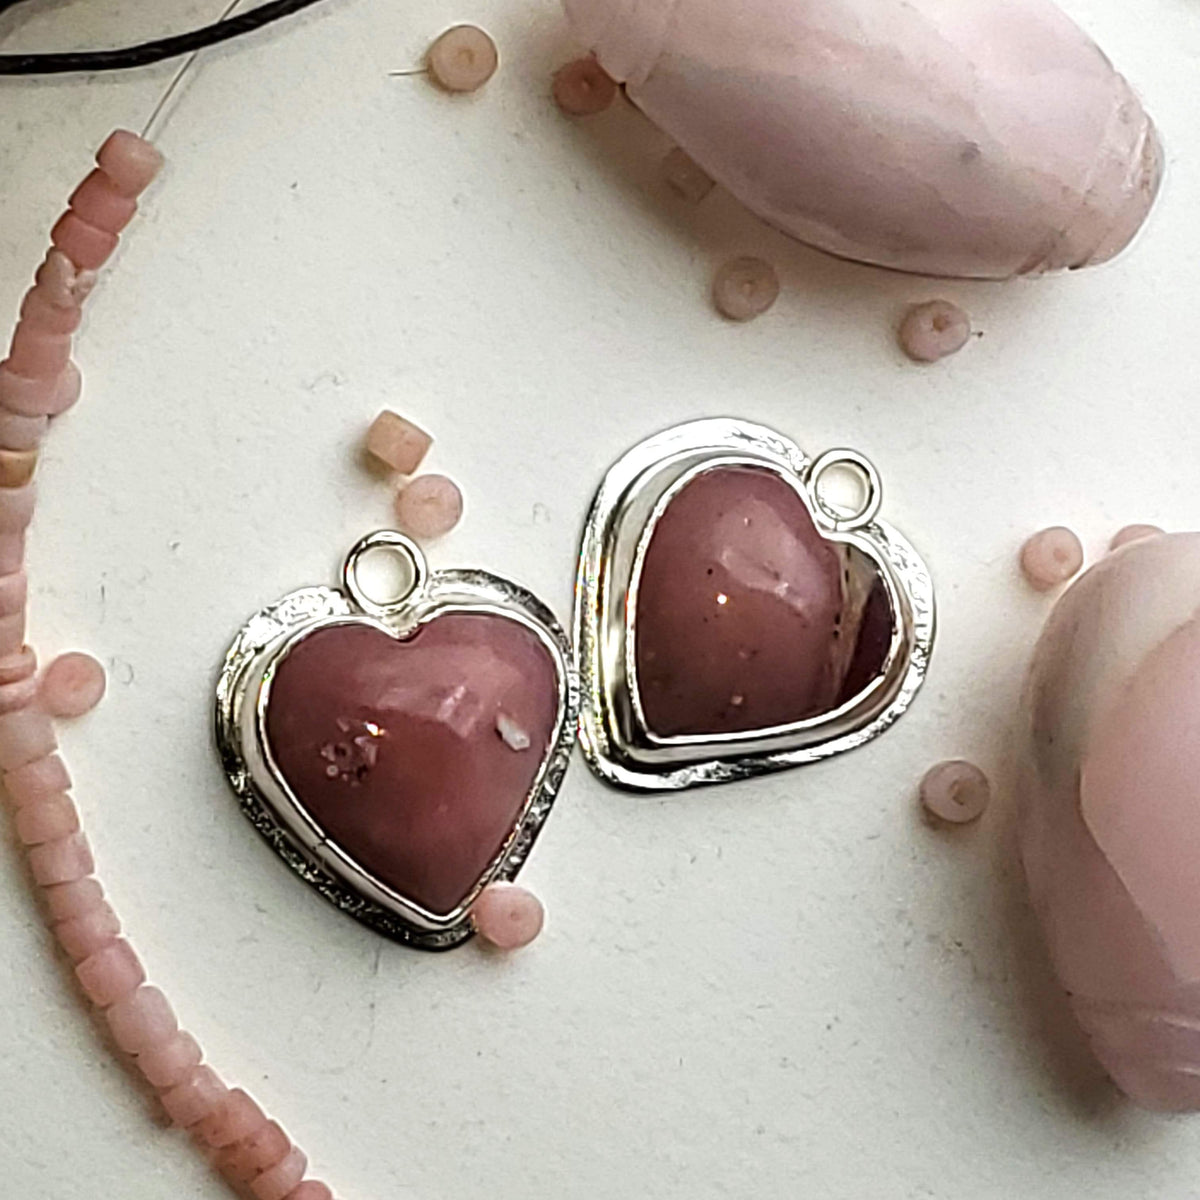 janet lasher Jewelry Earring Pink Peruvian Opal Heart Drop Earrings